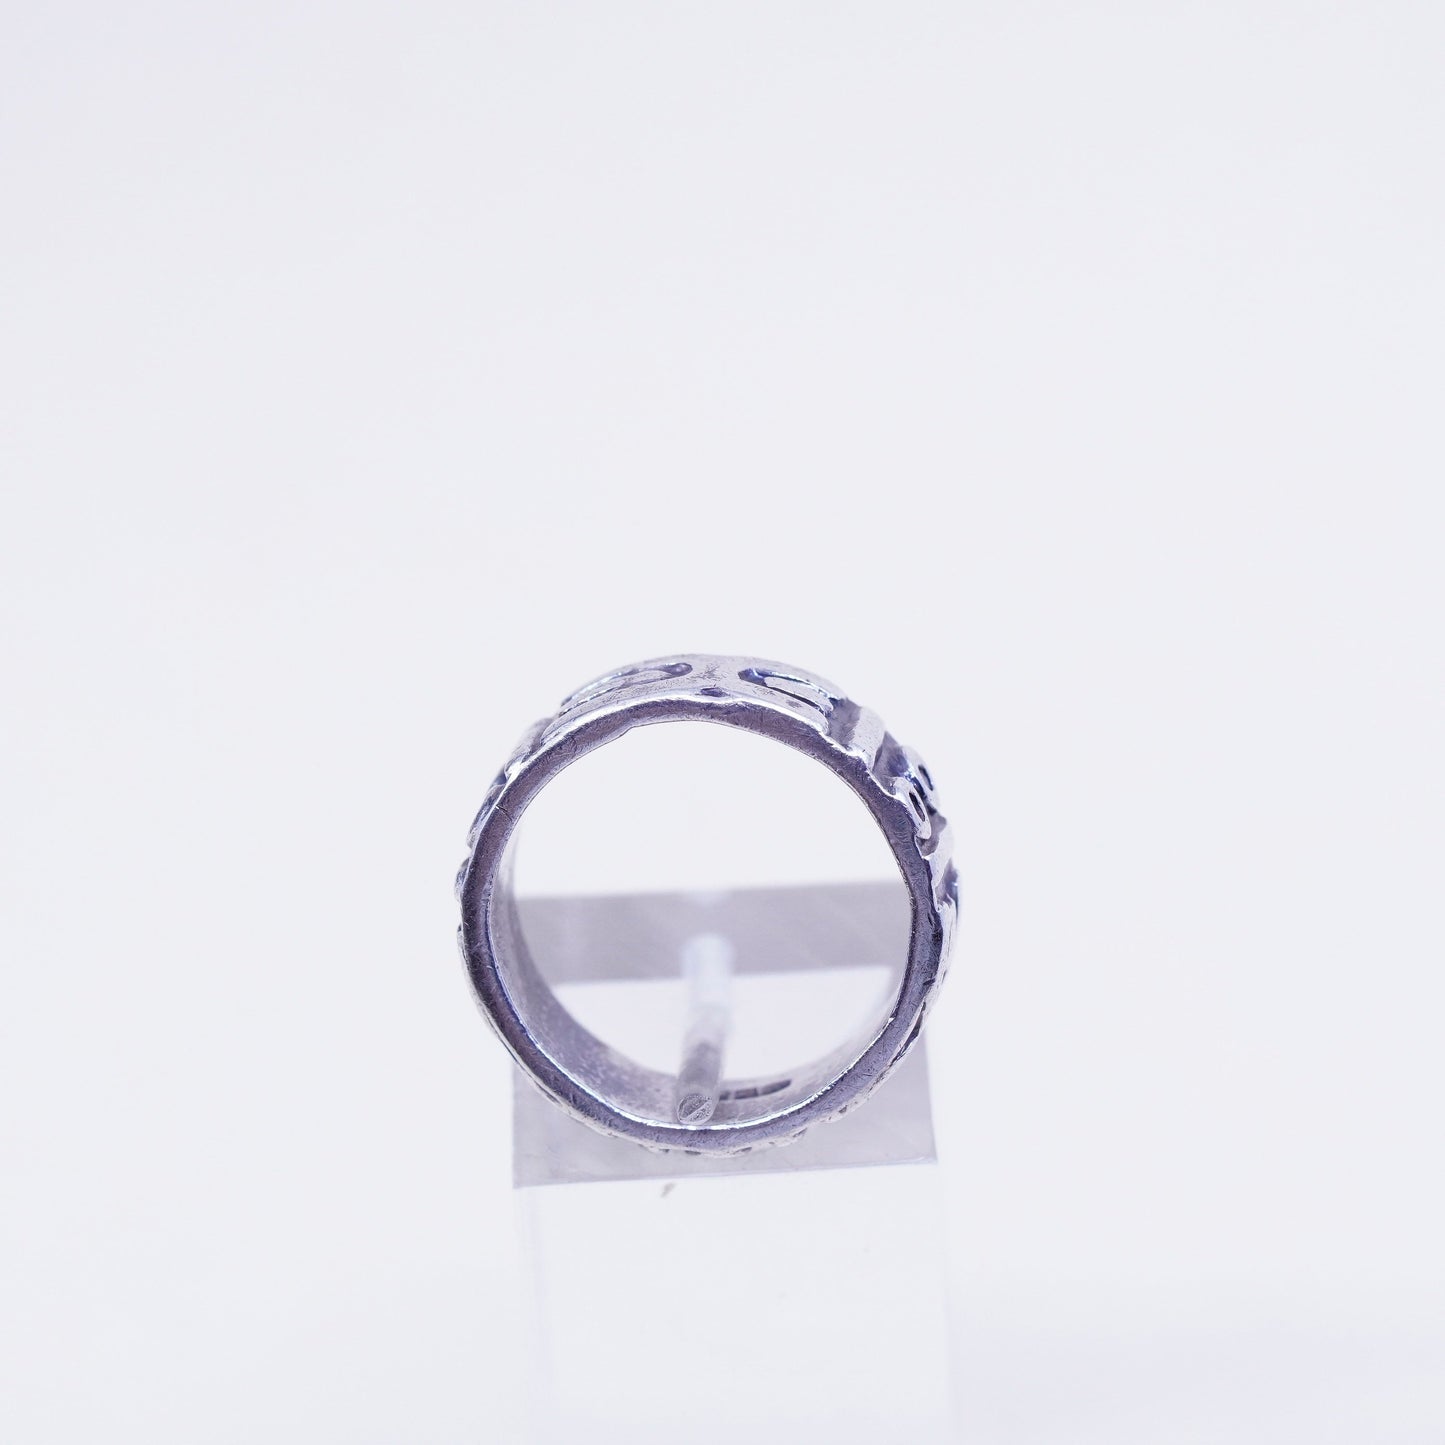 Size 7, vintage Hopi Sterling silver handmade ring, men’s patterned 925 band